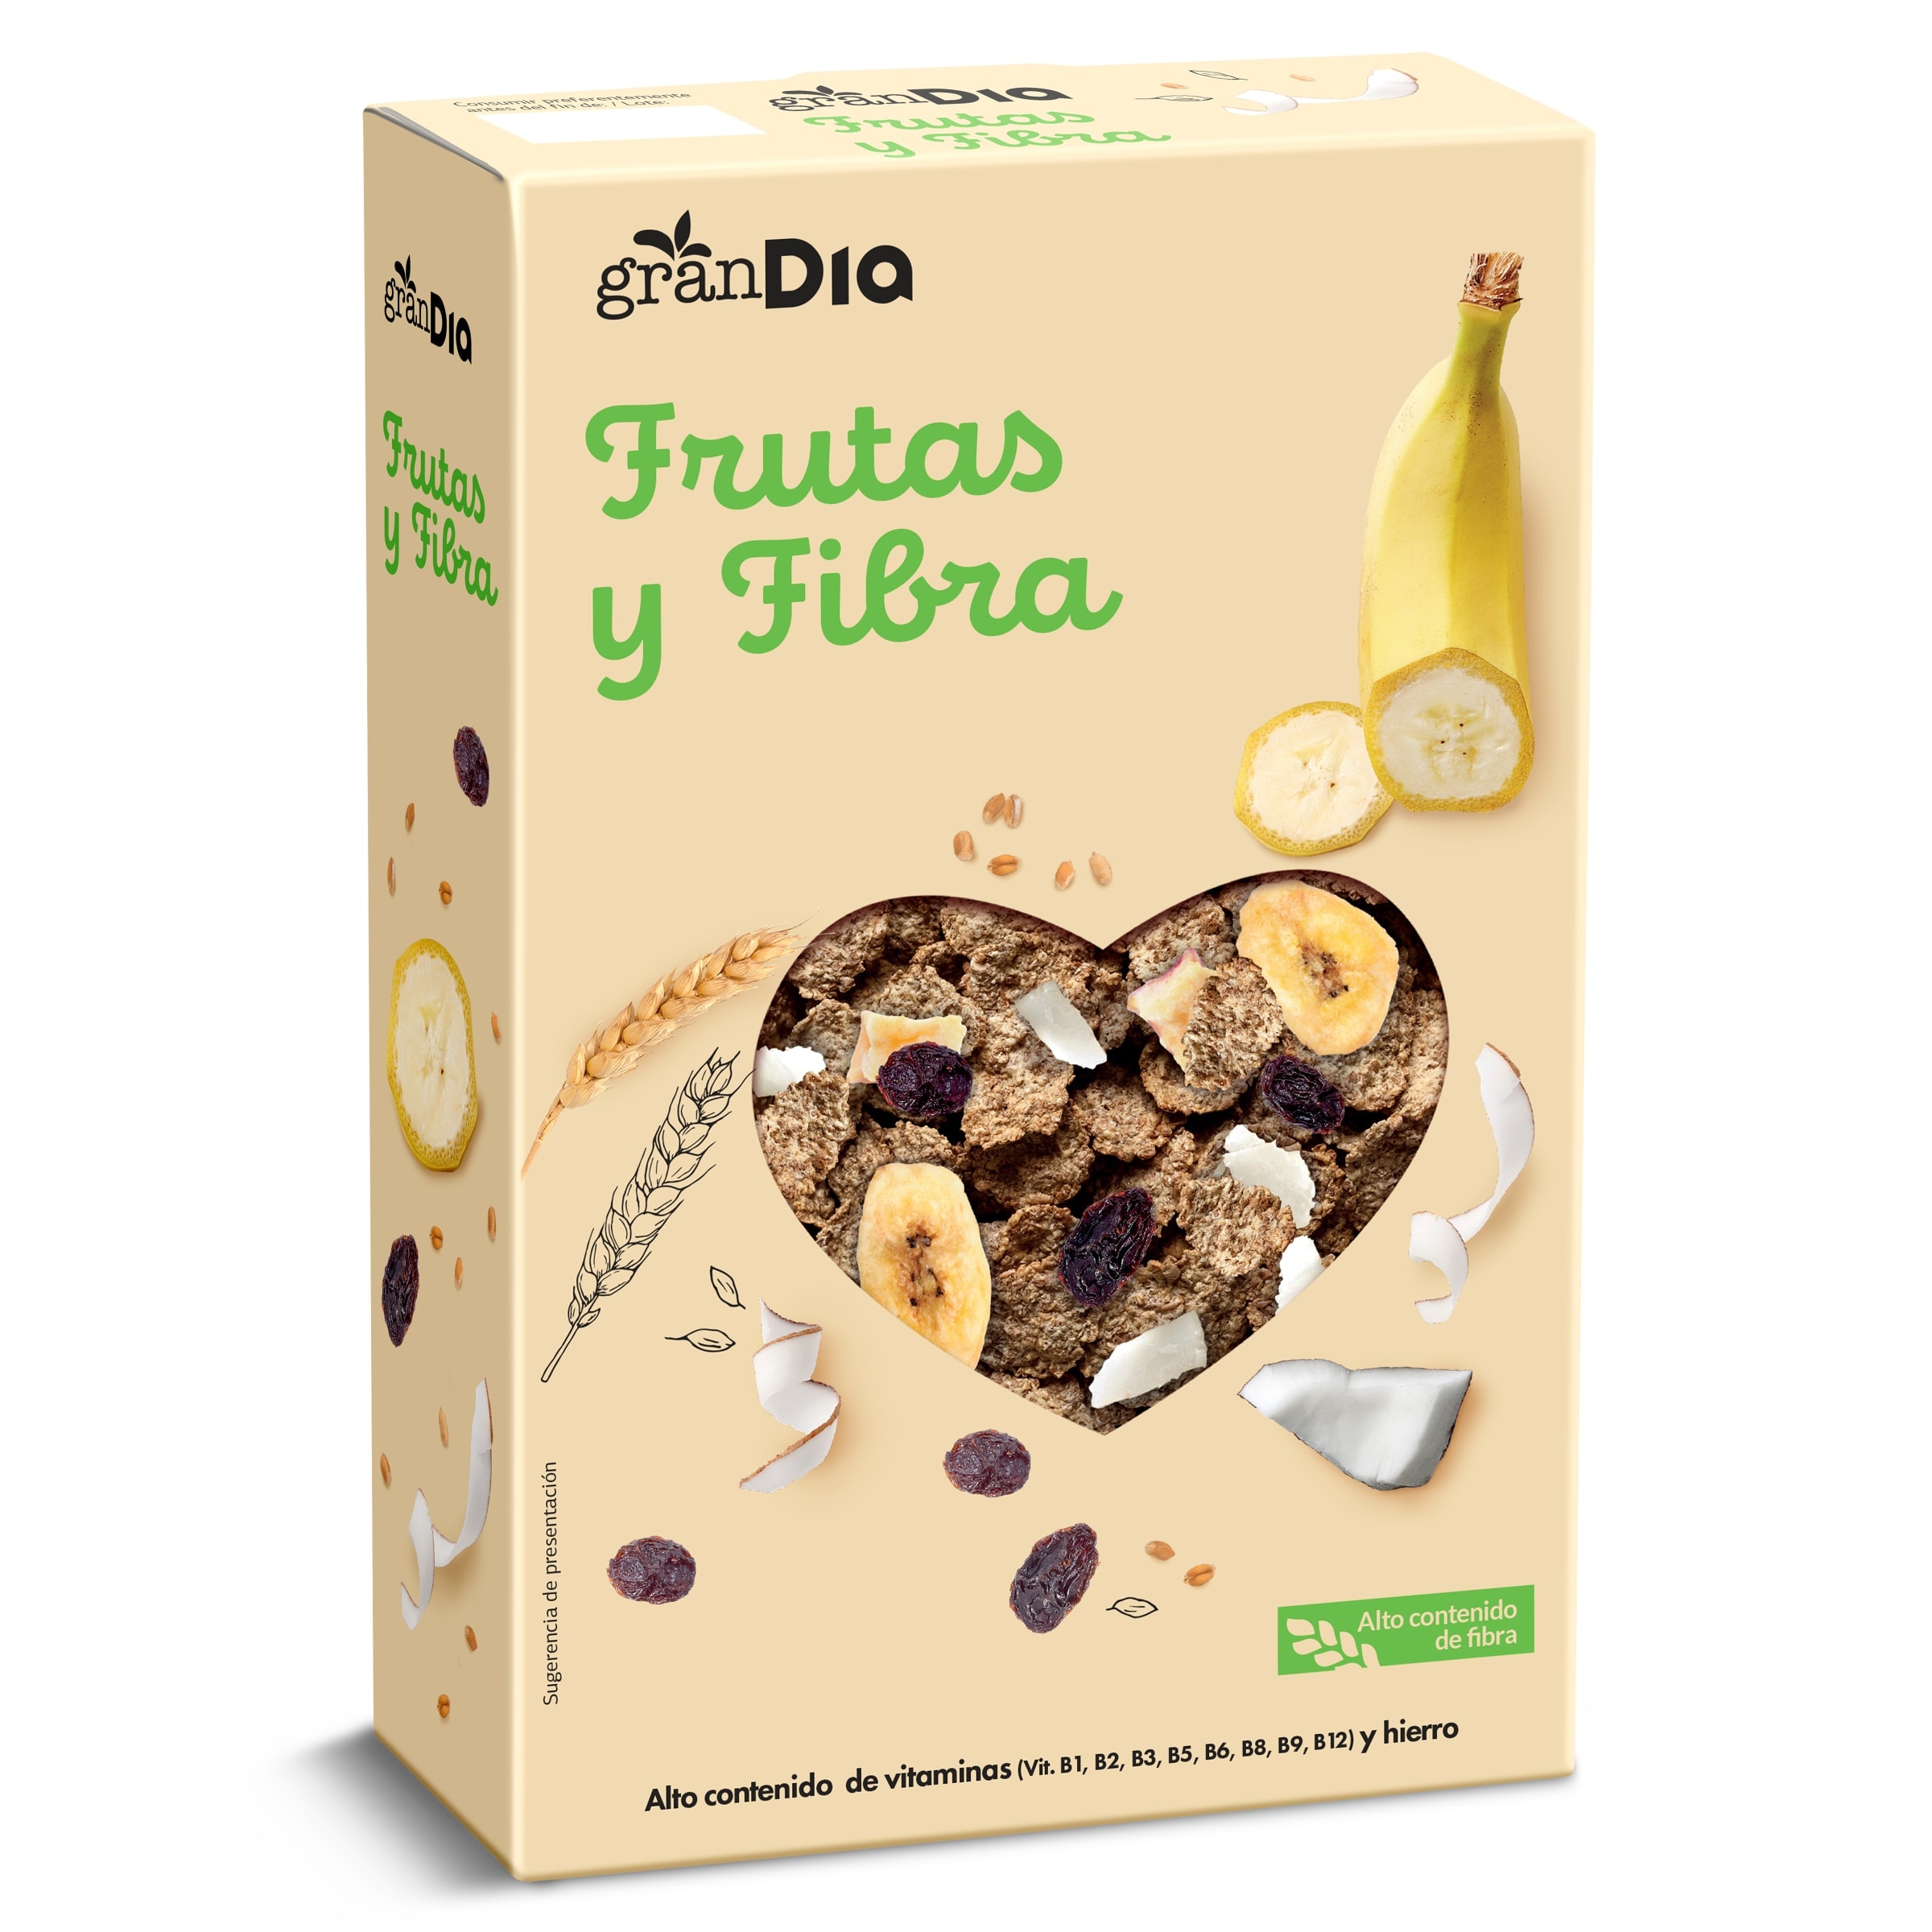 Cereales copos de trigo con fruta y fibra Gran Dia caja 500 g -  Supermercados DIA